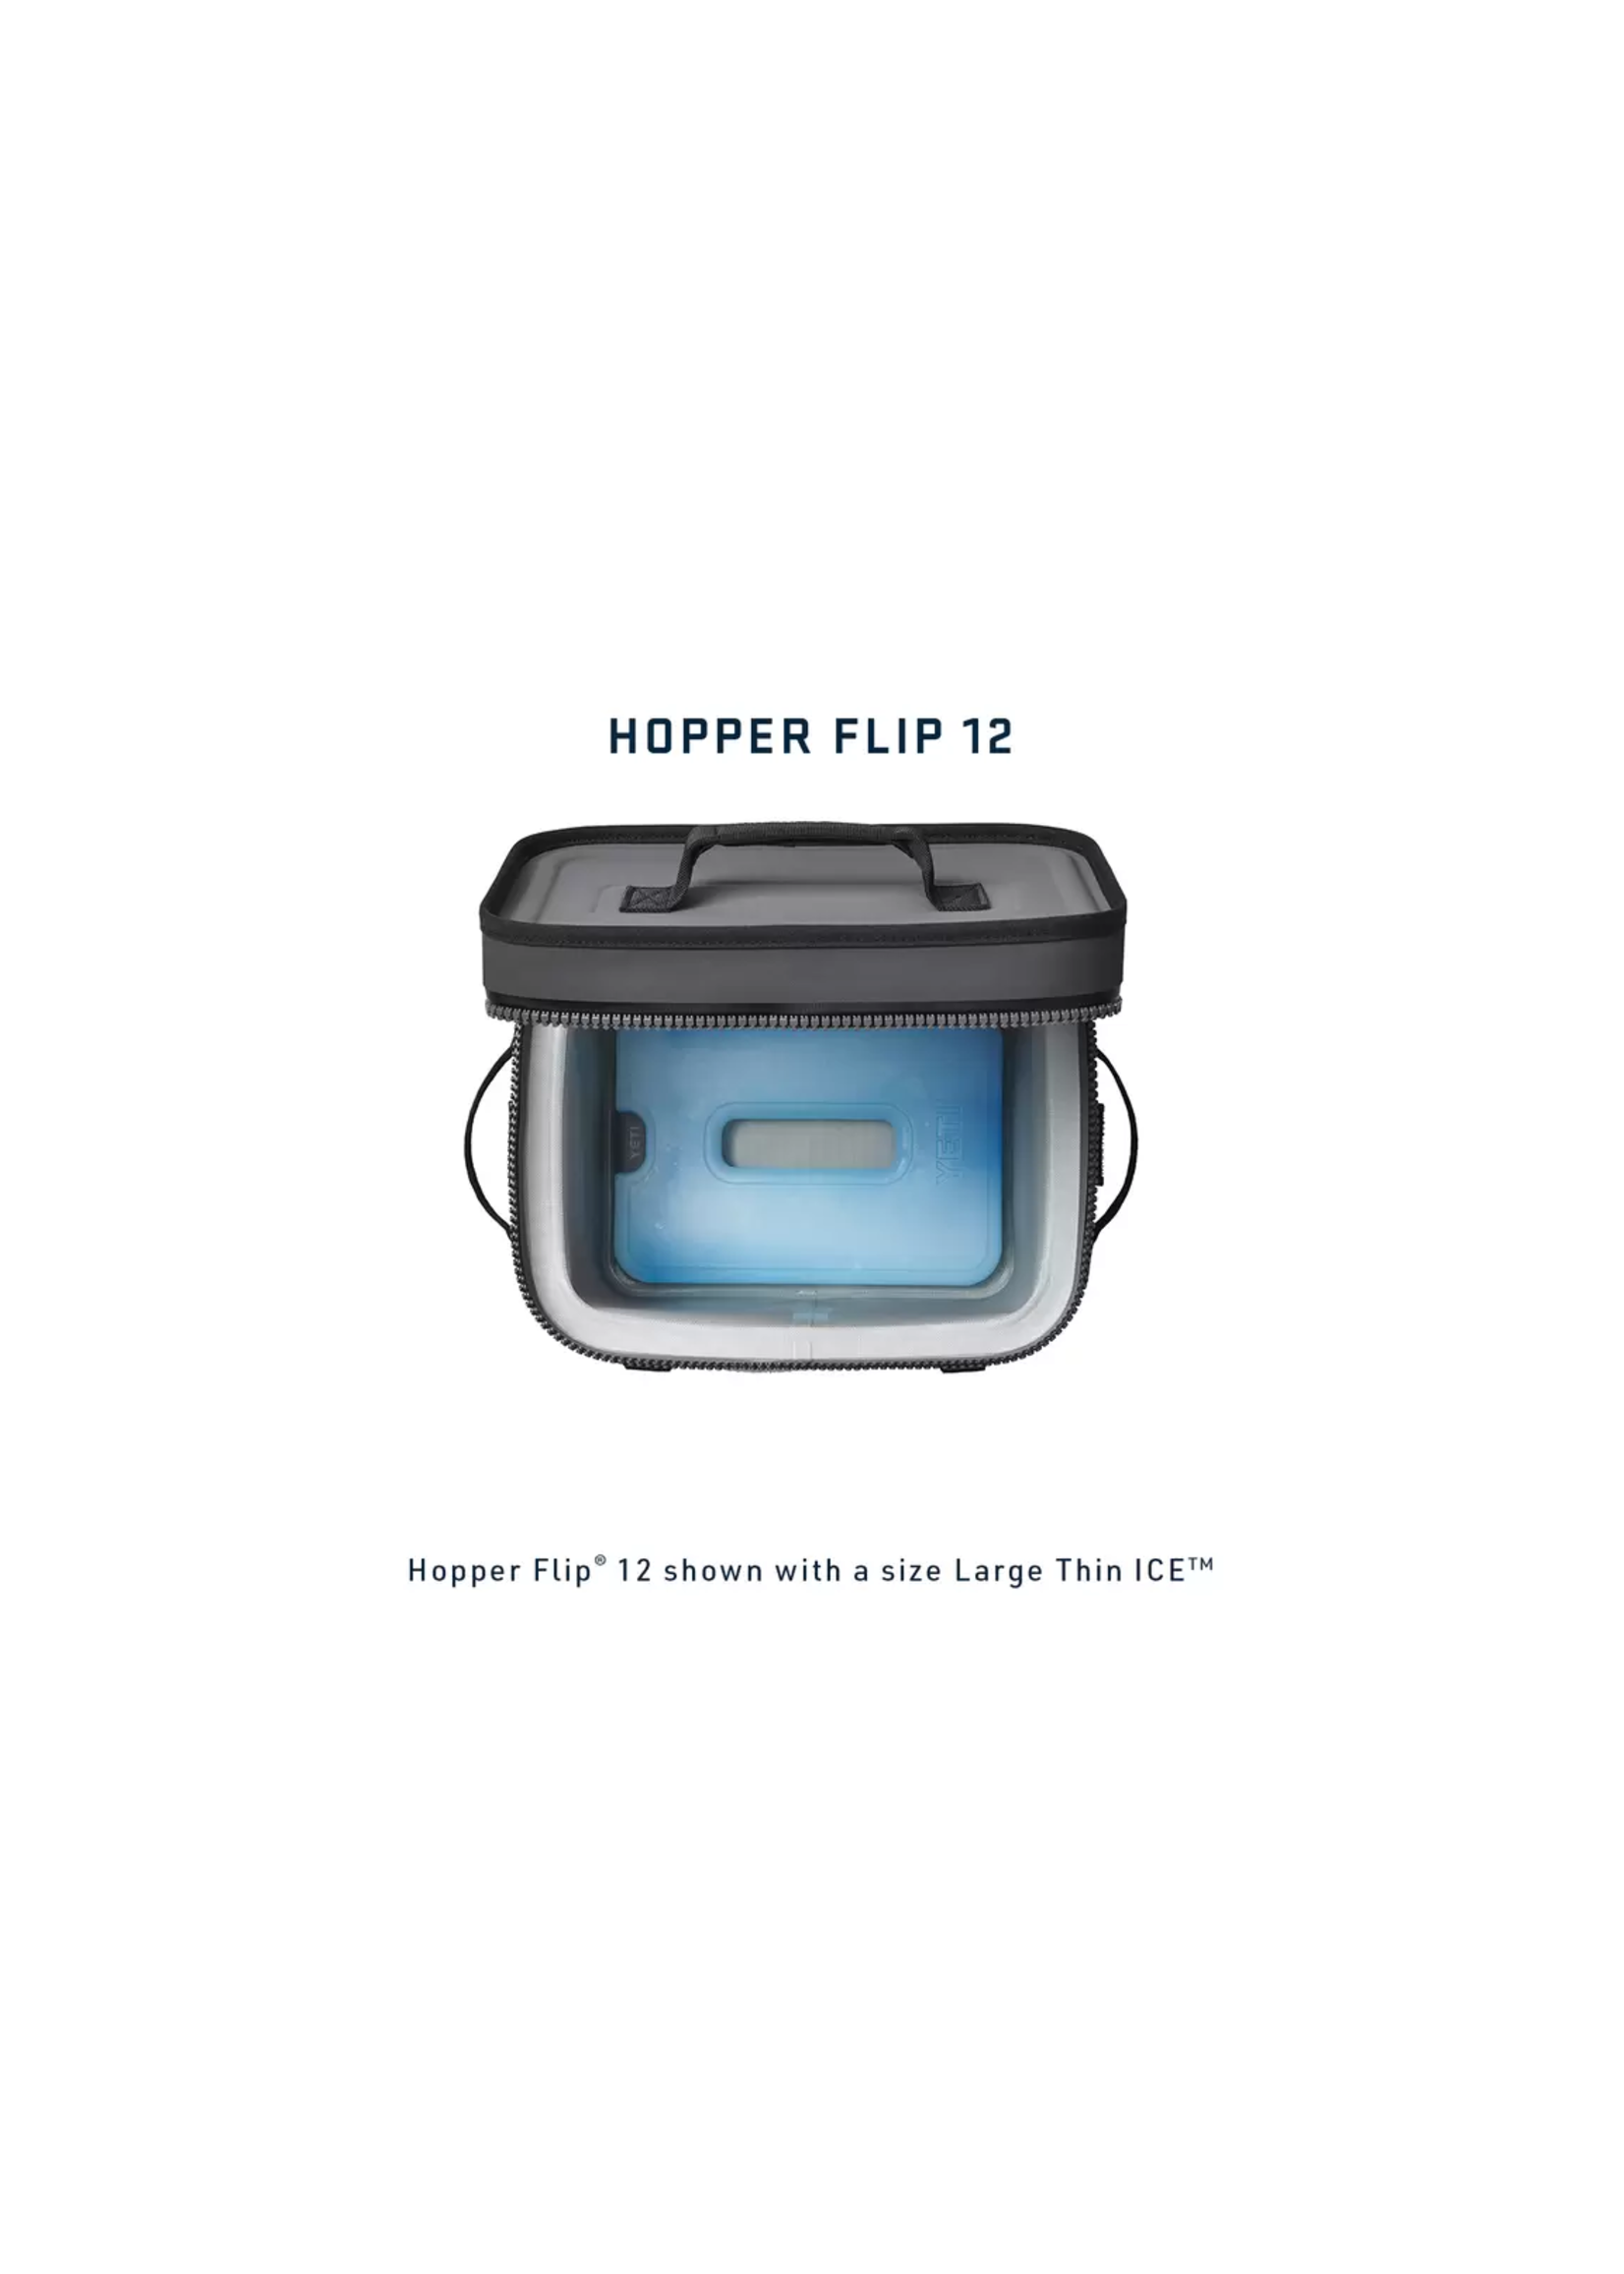 YETI Hopper Flip 12